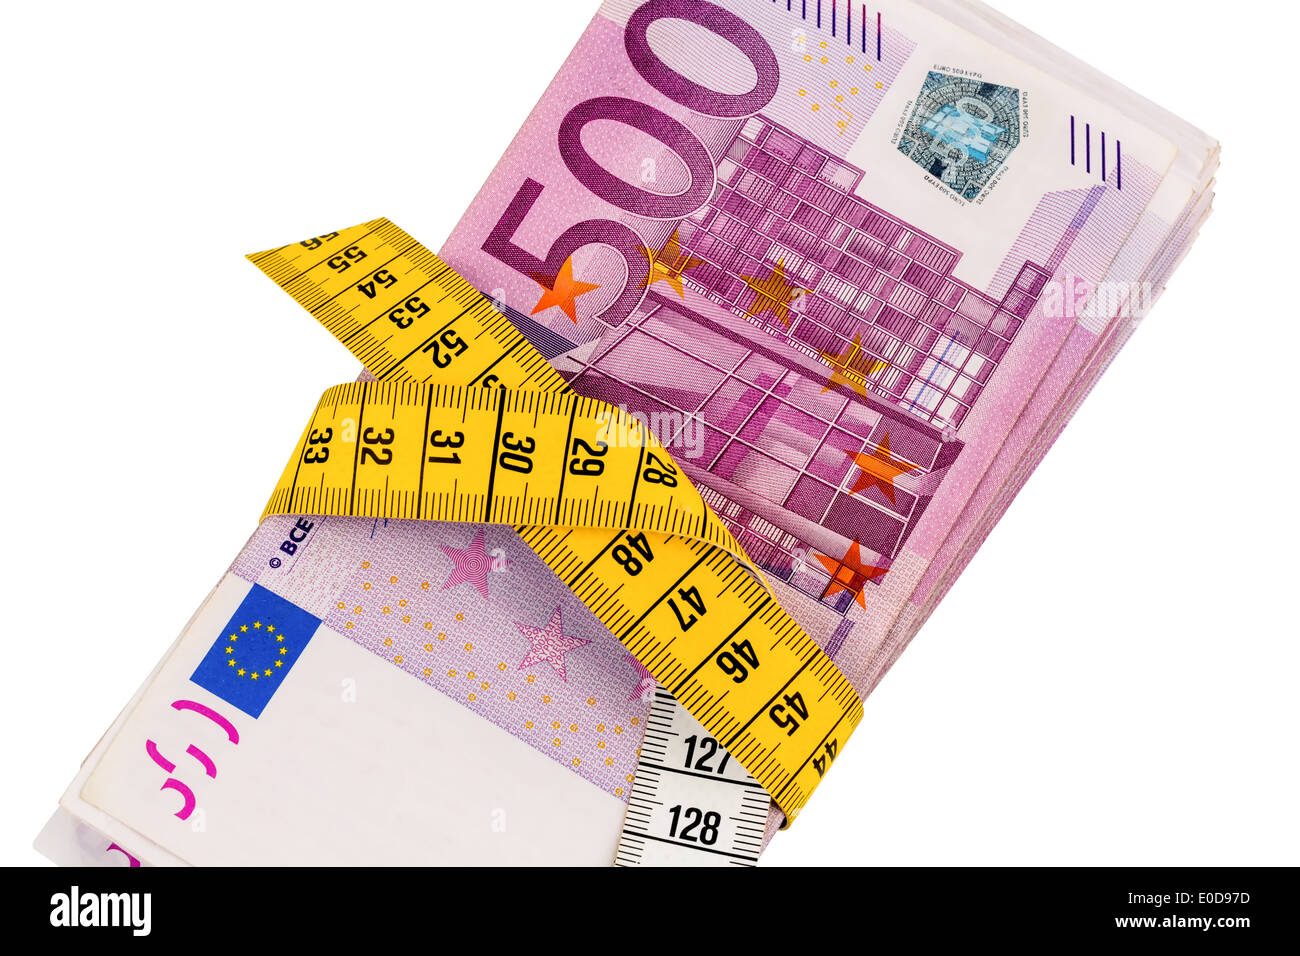 Les billets de banque et ruban à mesurer, photo symbolique pour les mesures d'économie, l'assainissement budgétaire et de contrôle, Geldscheine und Bandm Banque D'Images